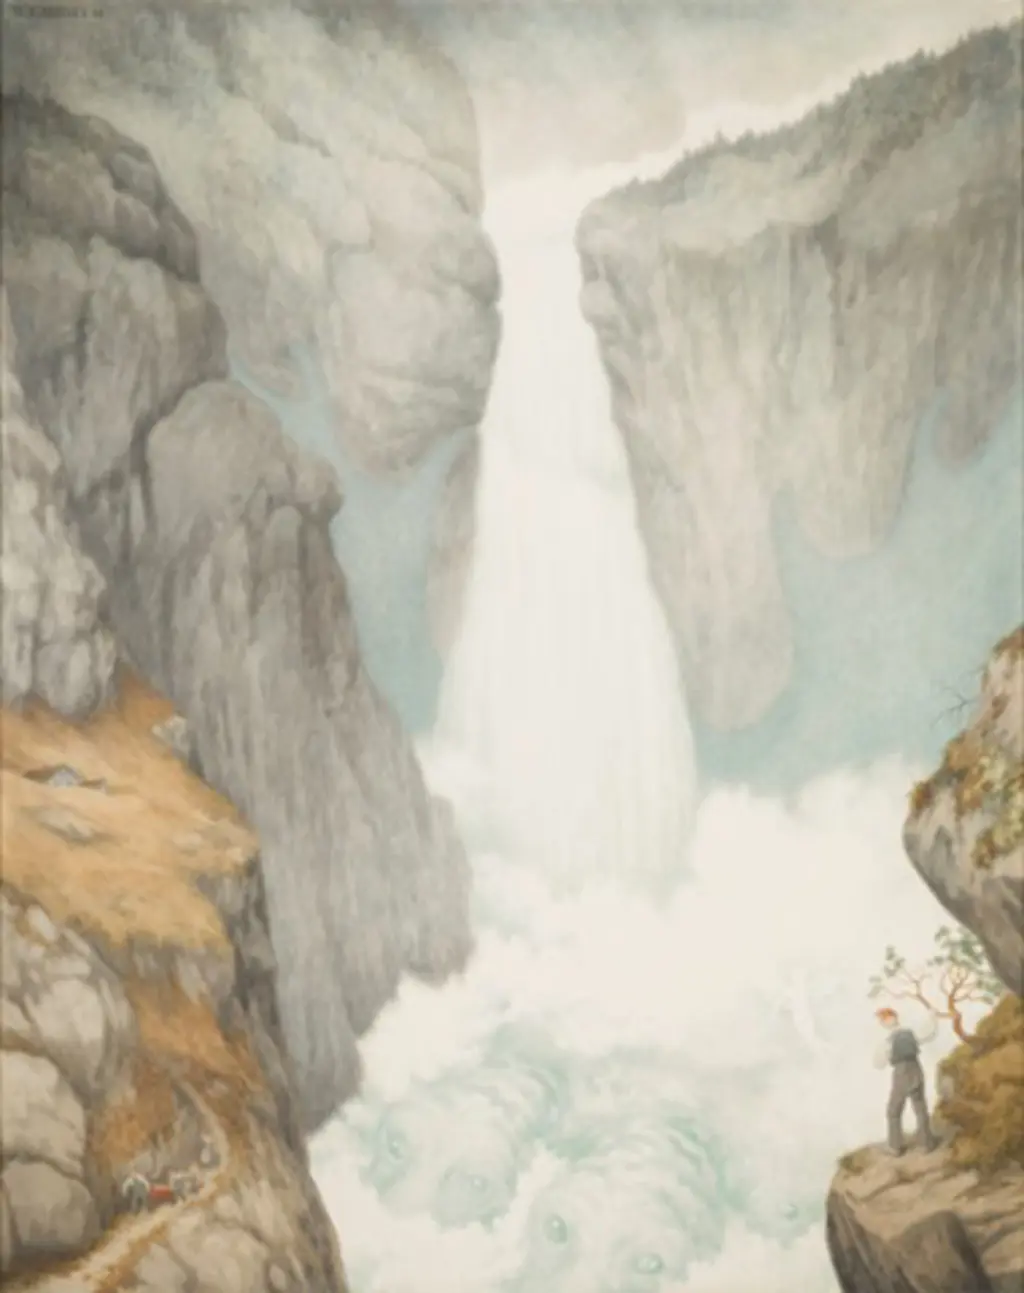 maleri av Rjukanfossen 